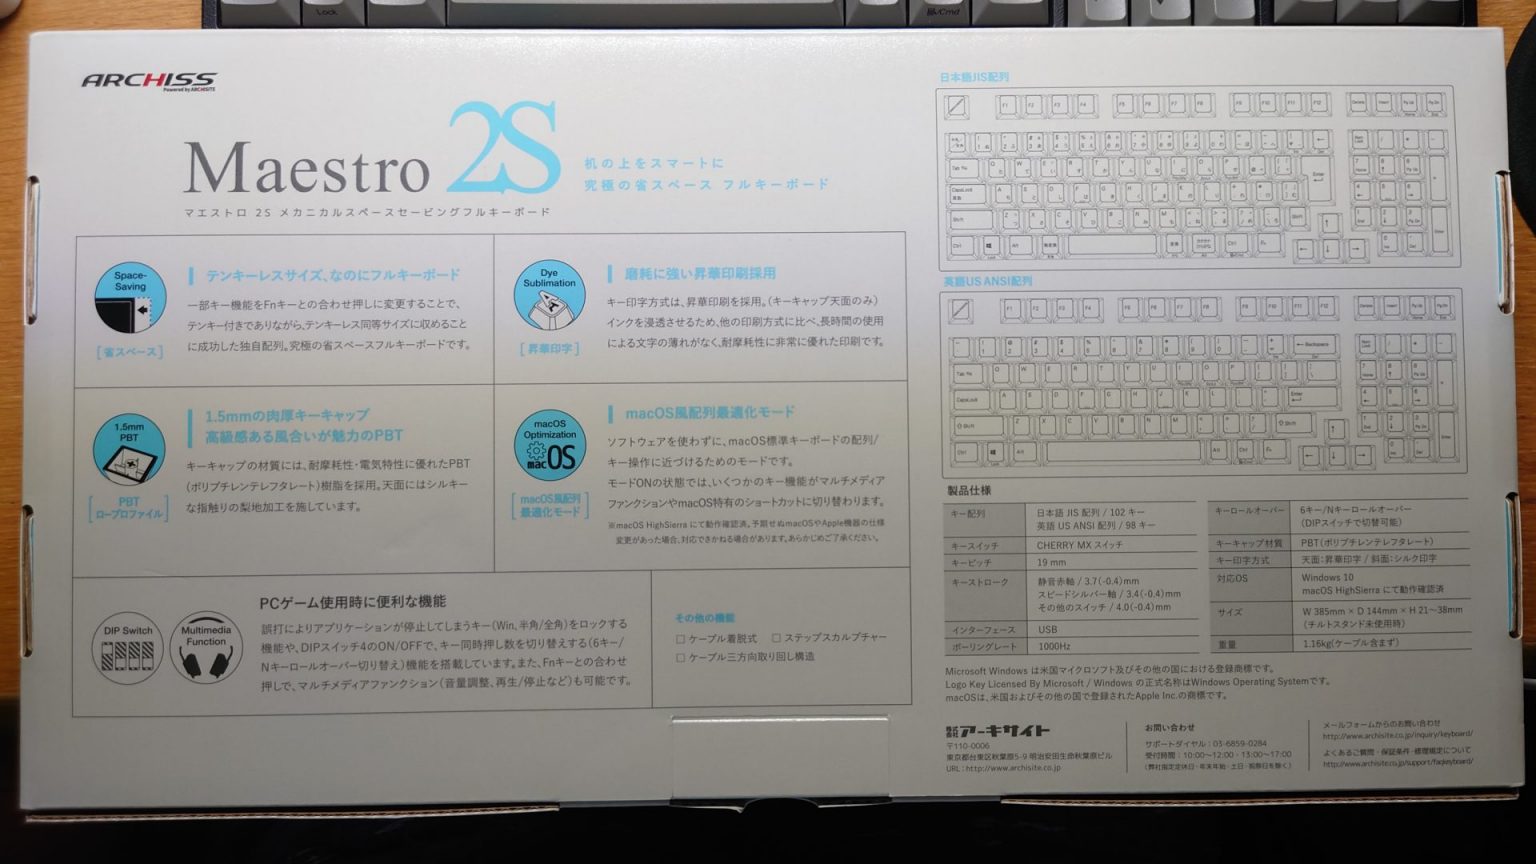 【ARCHISS】ベストなサイズ感！10キー付きなのにフルサイズよりコンパクトなキーボード「Maestro 2S」をレビュー【メカニカル